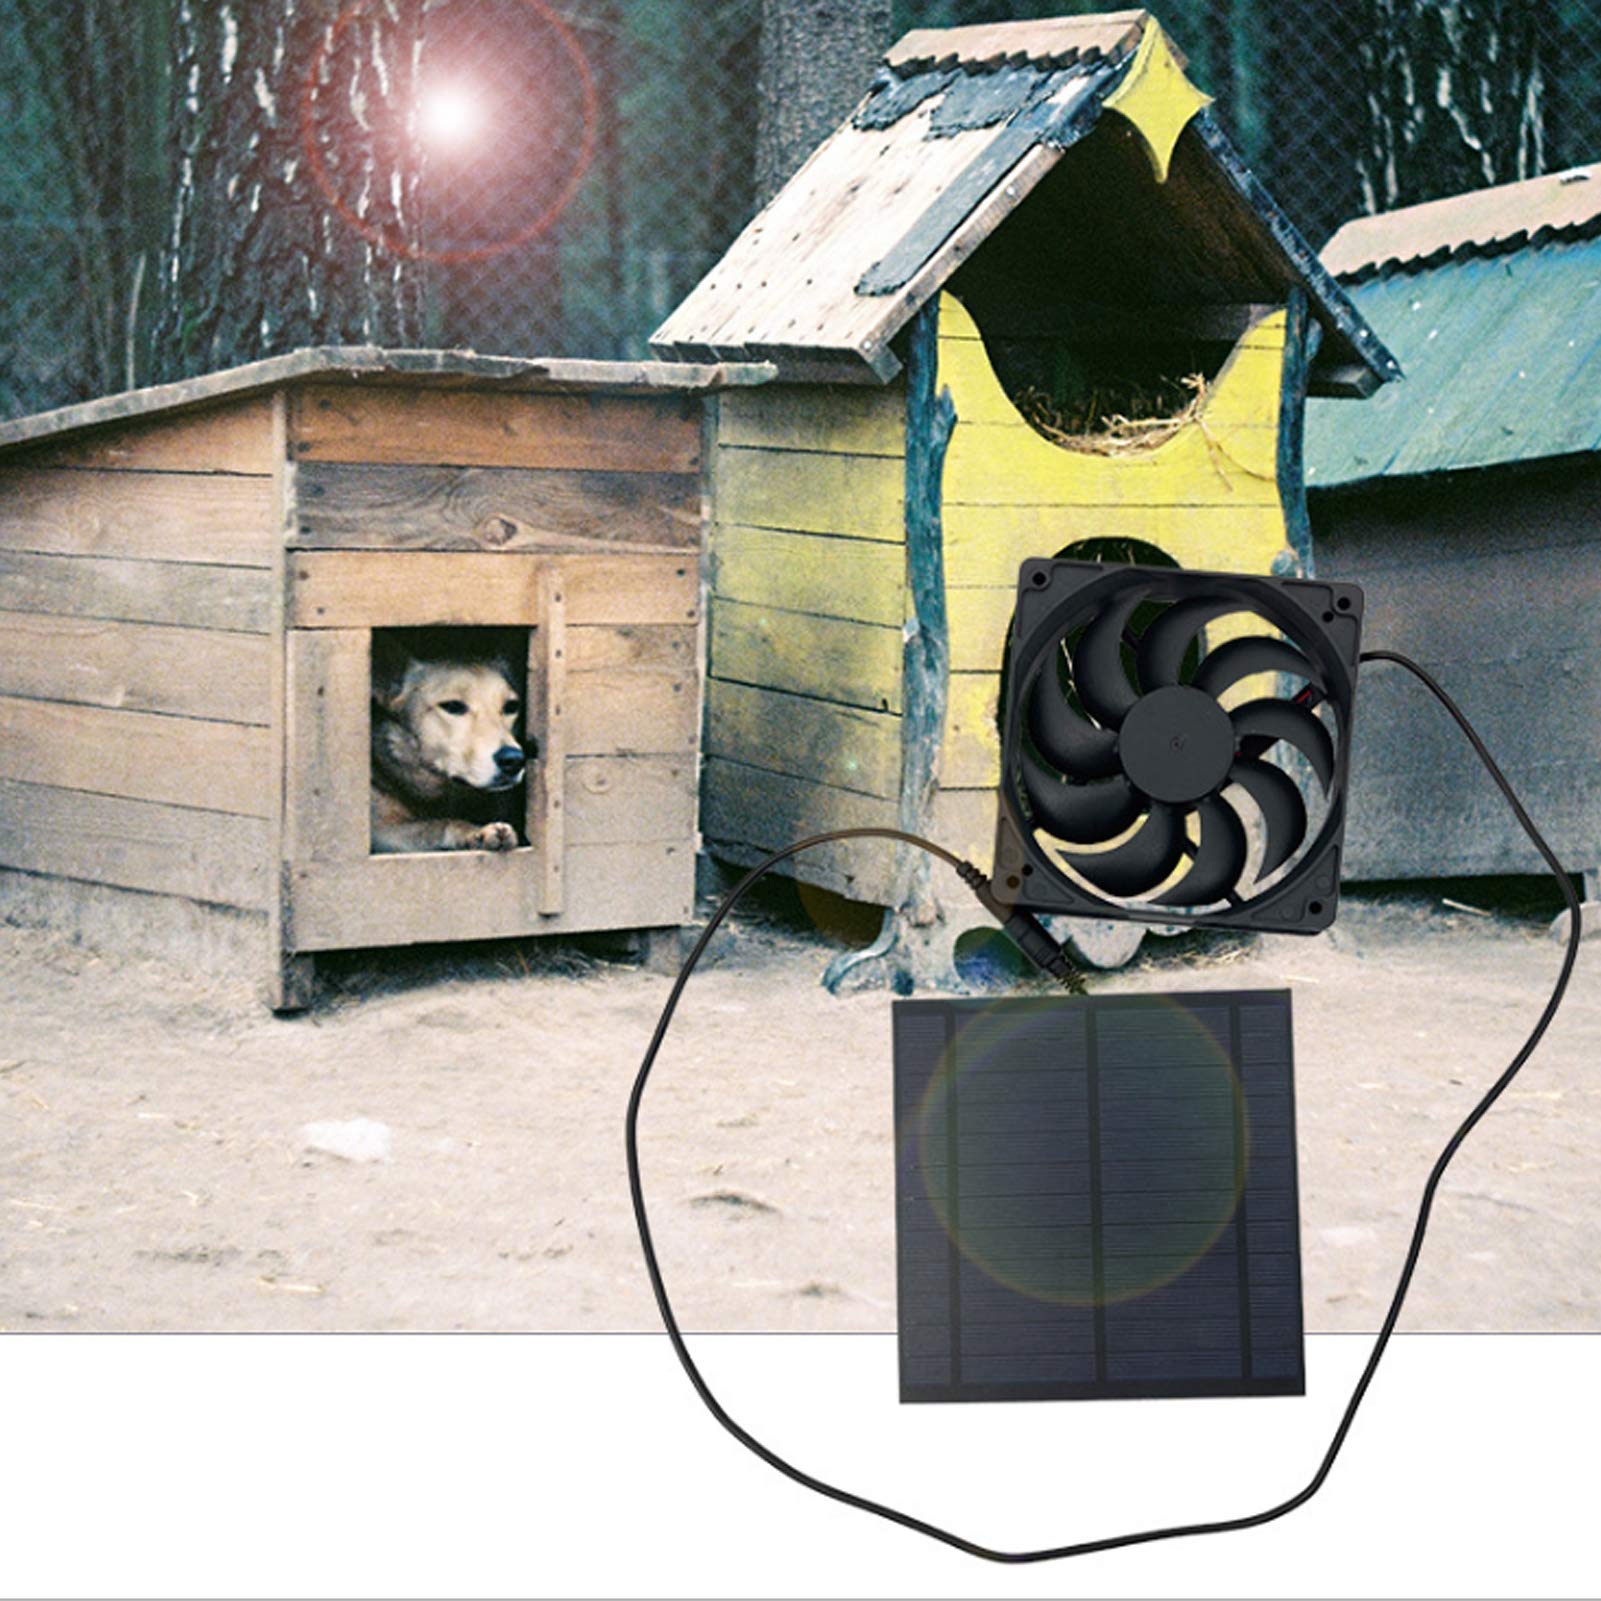 Jiawu Solar Fan, 5W Solar Panel Fan Kit, Solar Powered Fan for Small Chicken Coops, Greenhouses, Sheds, Pet Houses, Solar Powered Exhaust Fan Solar Panel Board with Ventilation Fan